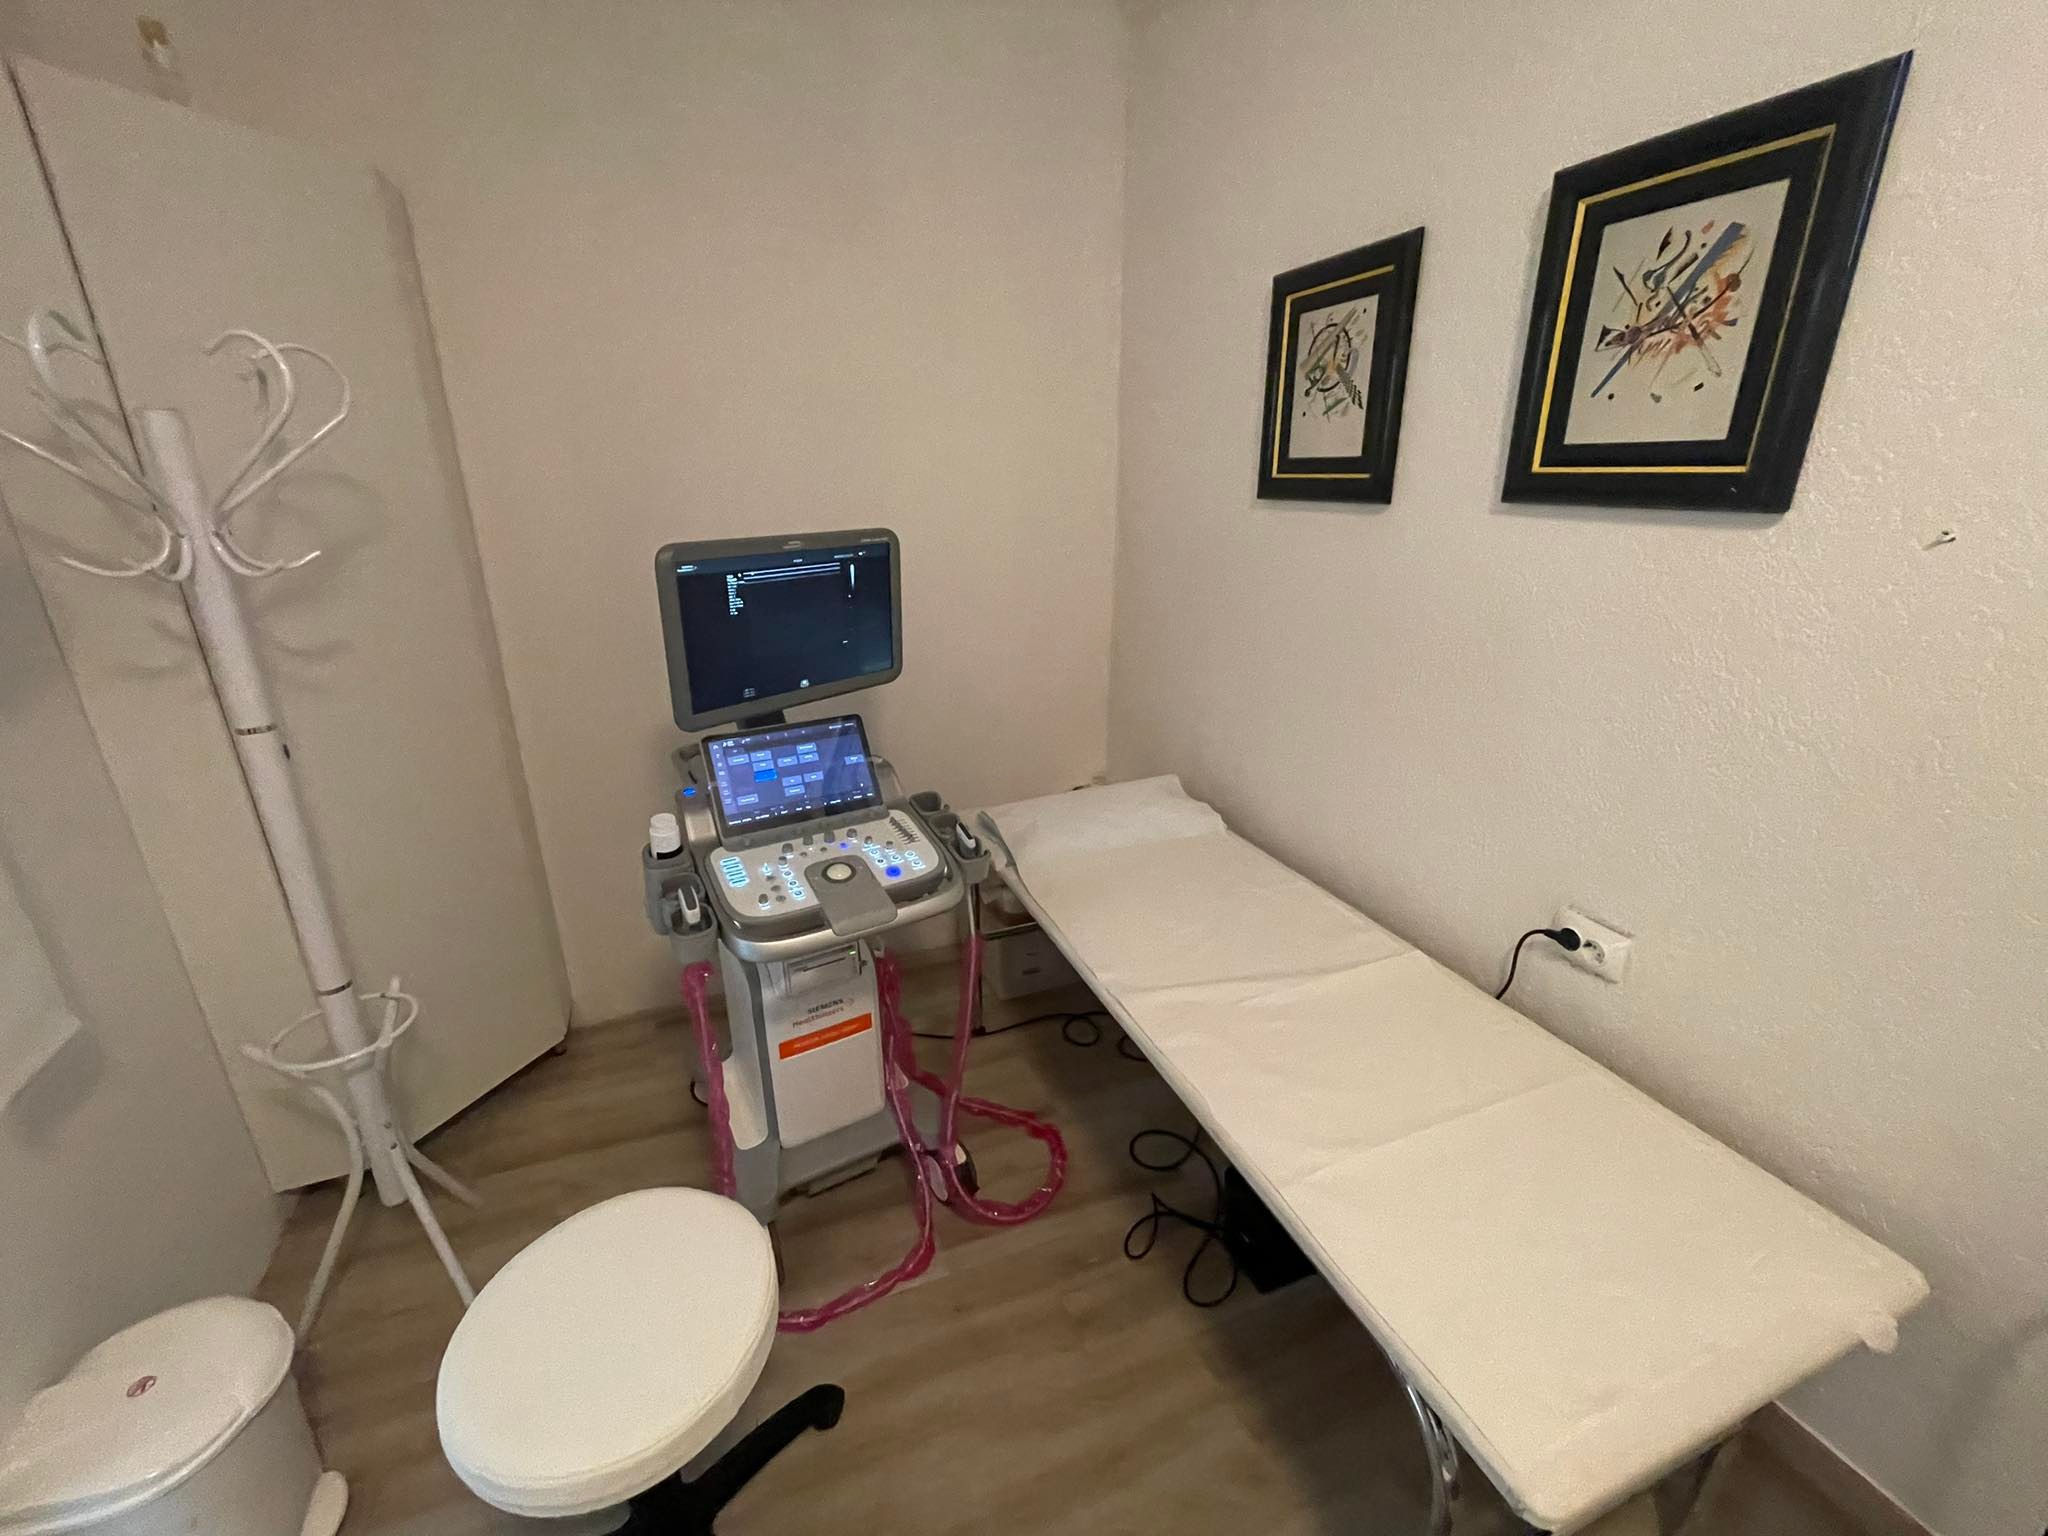 Promo: Savremena ordinacija za ultrazvučnu dijagnostiku u Visokom